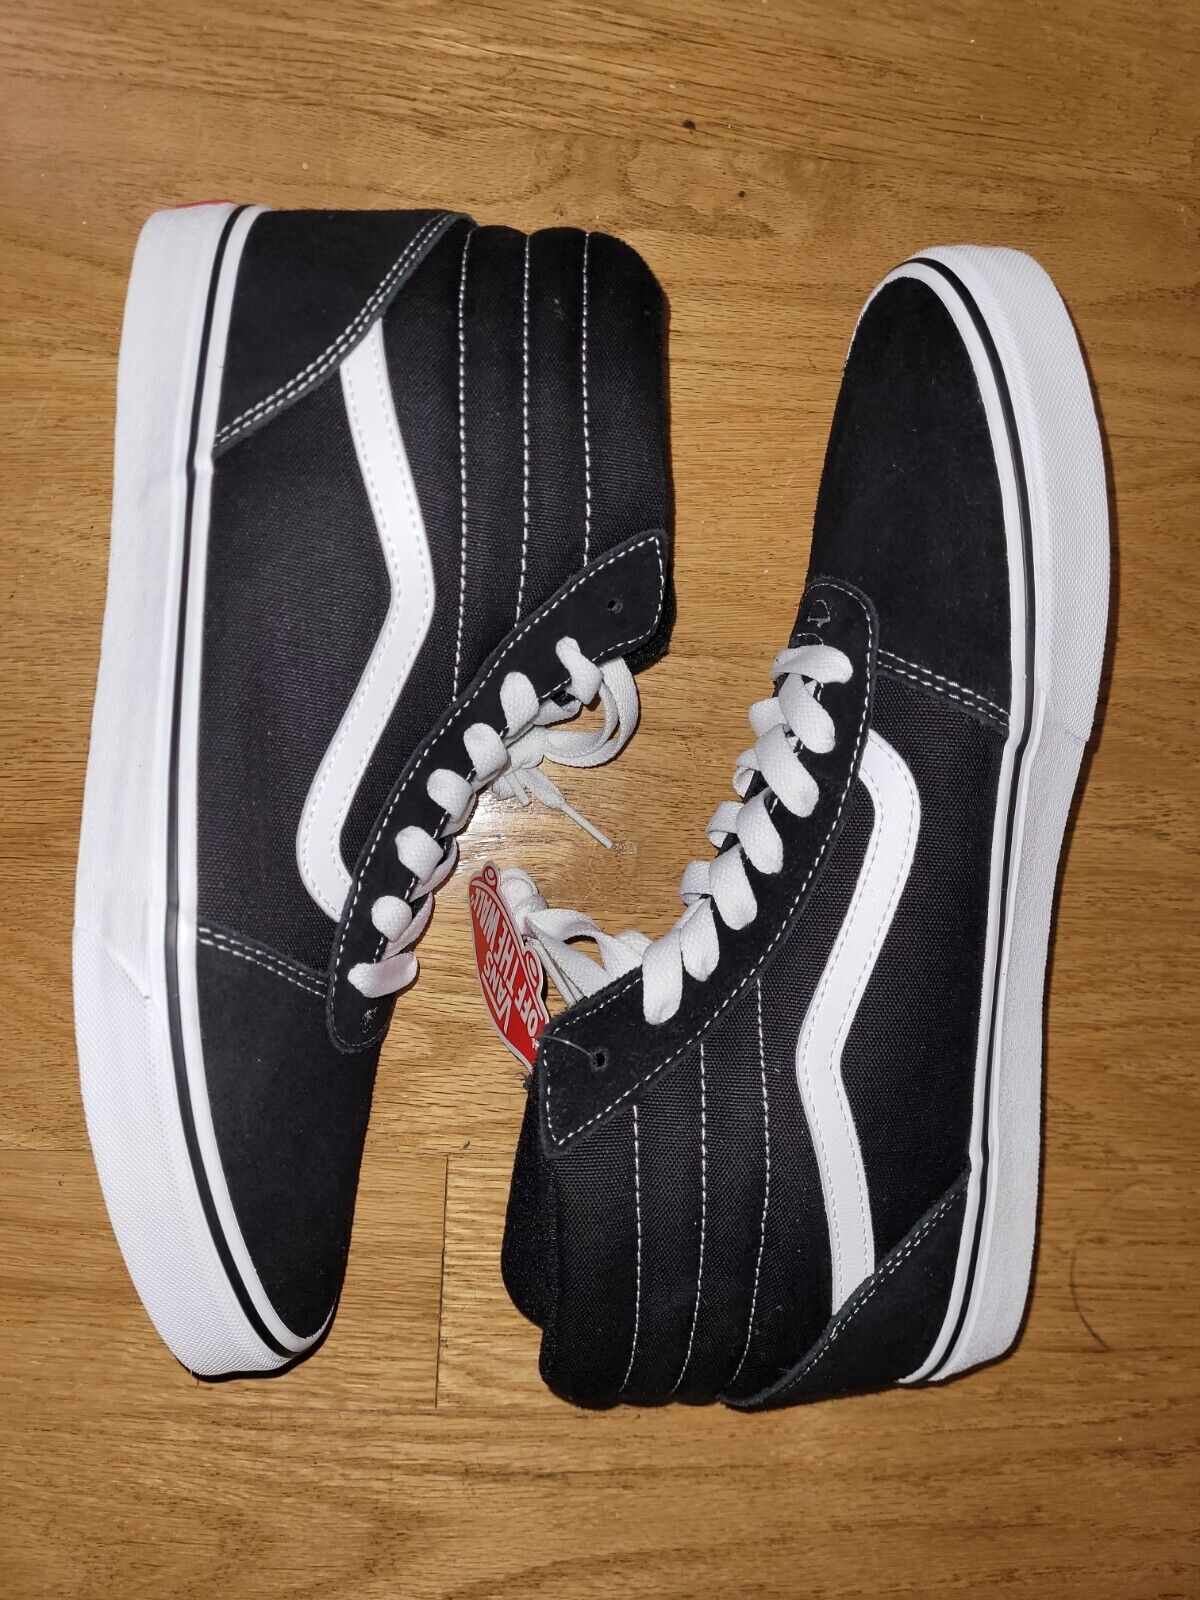 VANS 500714 Old Skool Hi-Top Sneakers Black Men's Size 13 | eBay